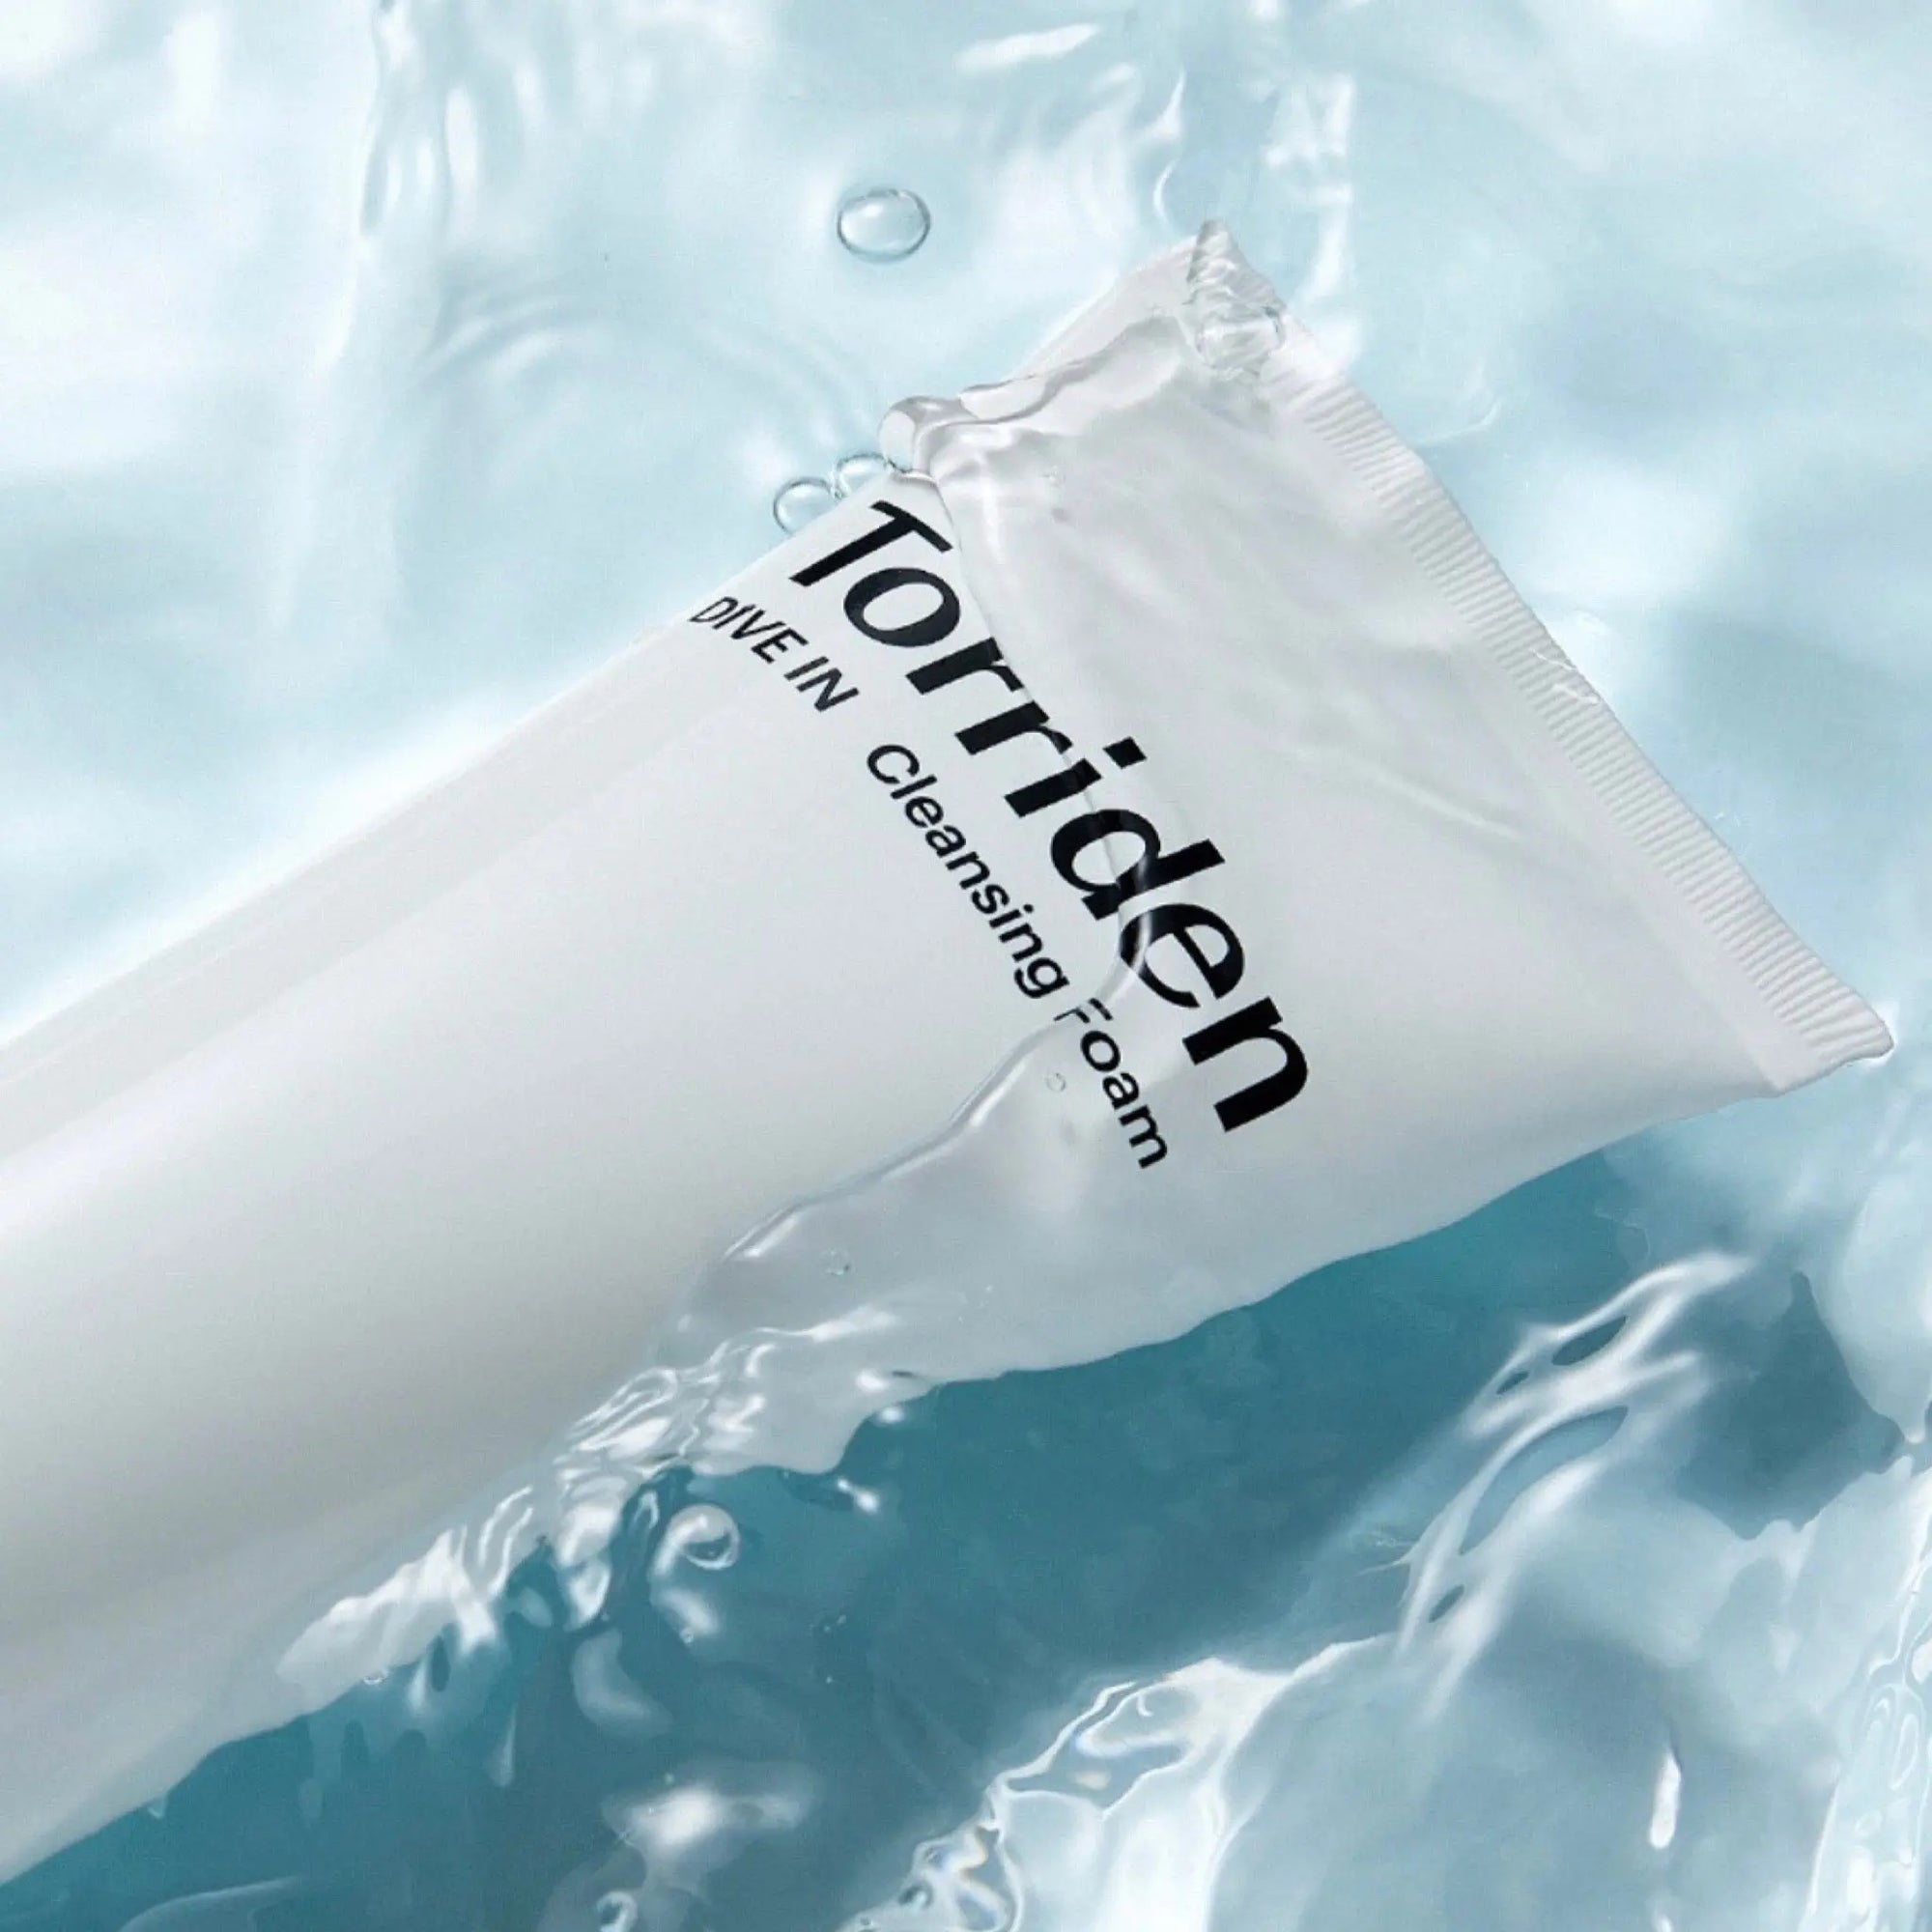 Torriden - Dive-In Low Molecular Hyaluronic Acid Cleansing Foam 150mL Torriden